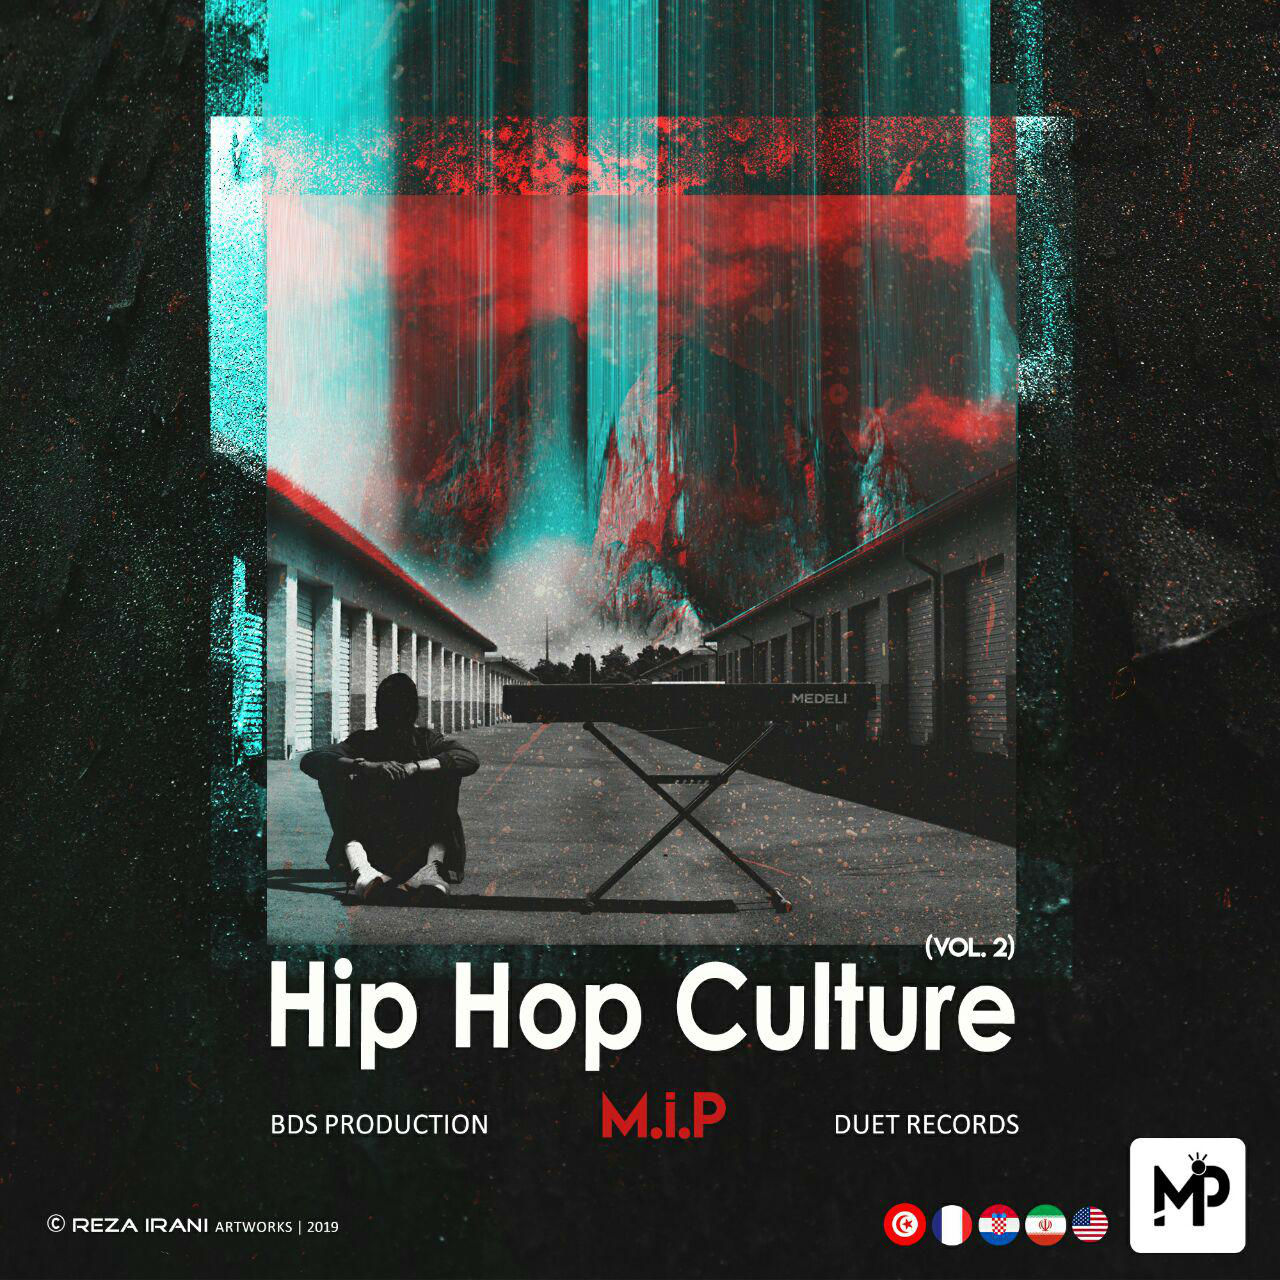 M.i.P - HipHop Culture (Vol 2)